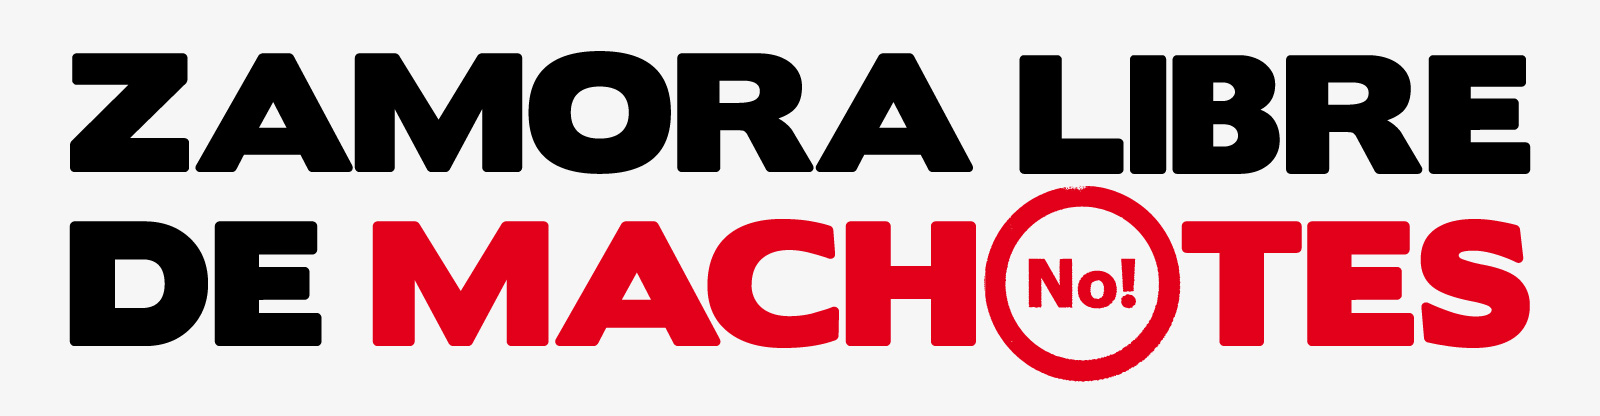 Agencia Touché - Zamora Libre de Machotes